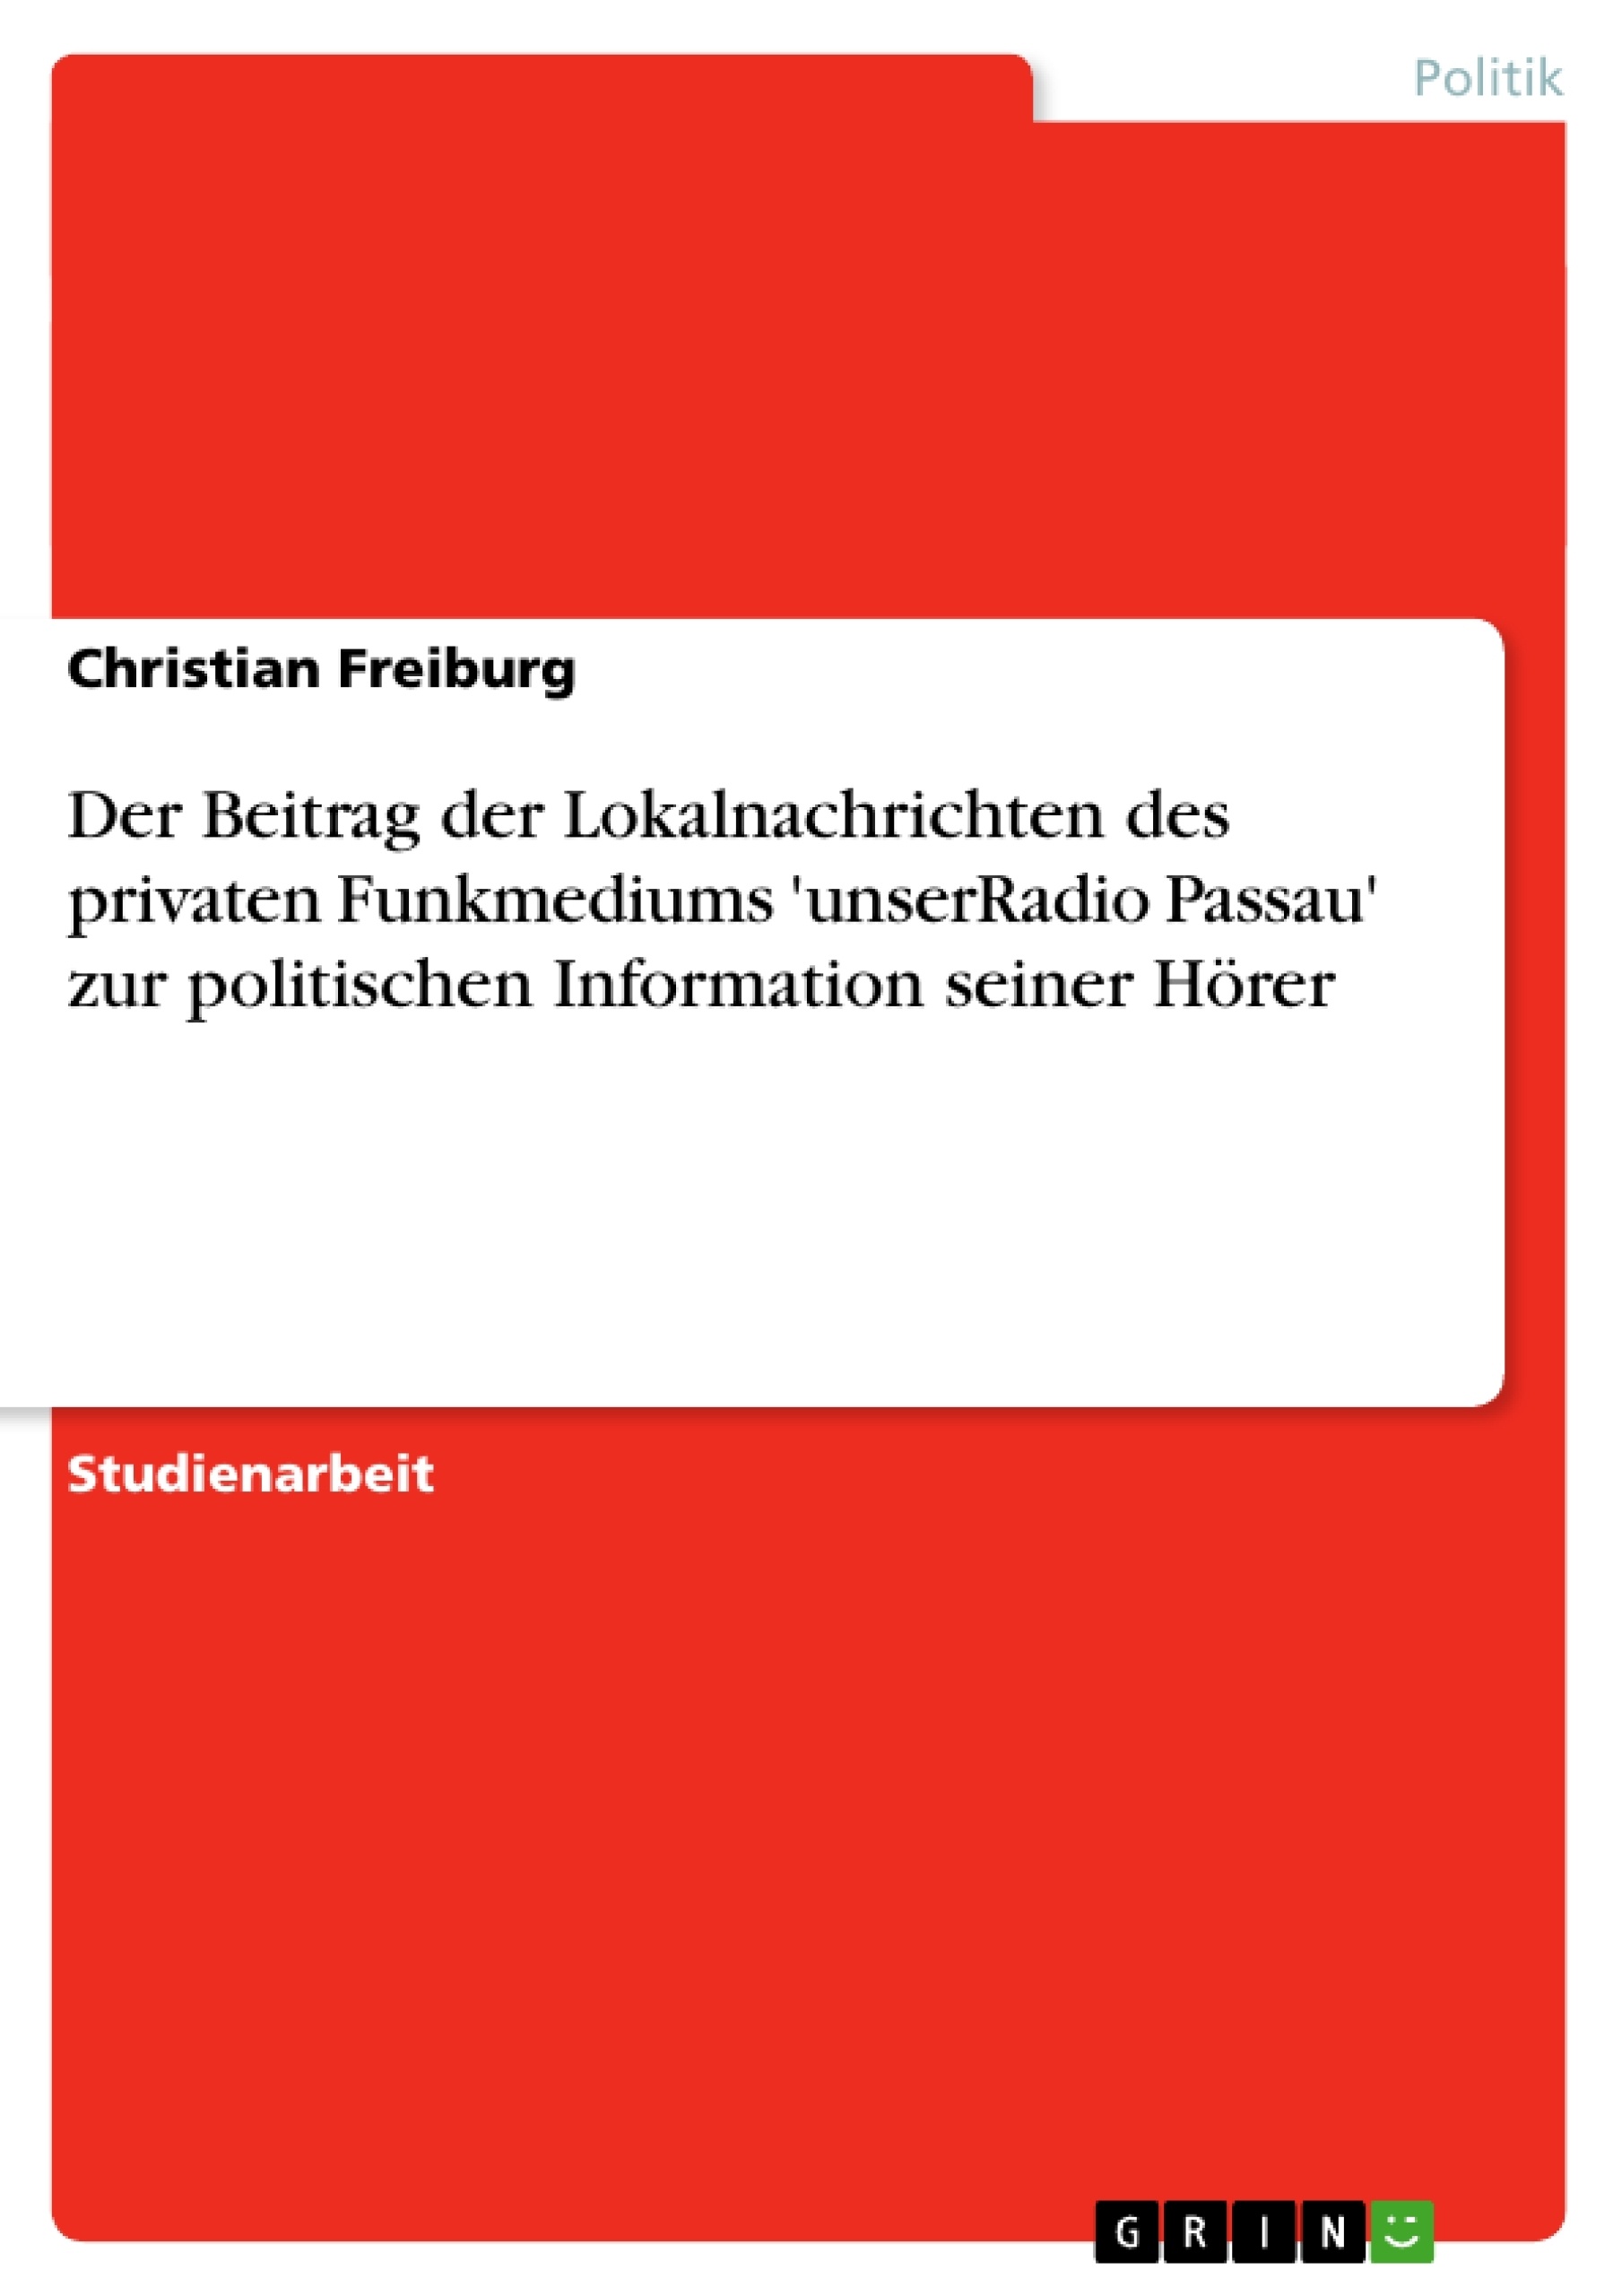 Título: Der Beitrag der Lokalnachrichten des privaten Funkmediums 'unserRadio Passau' zur politischen Information seiner Hörer